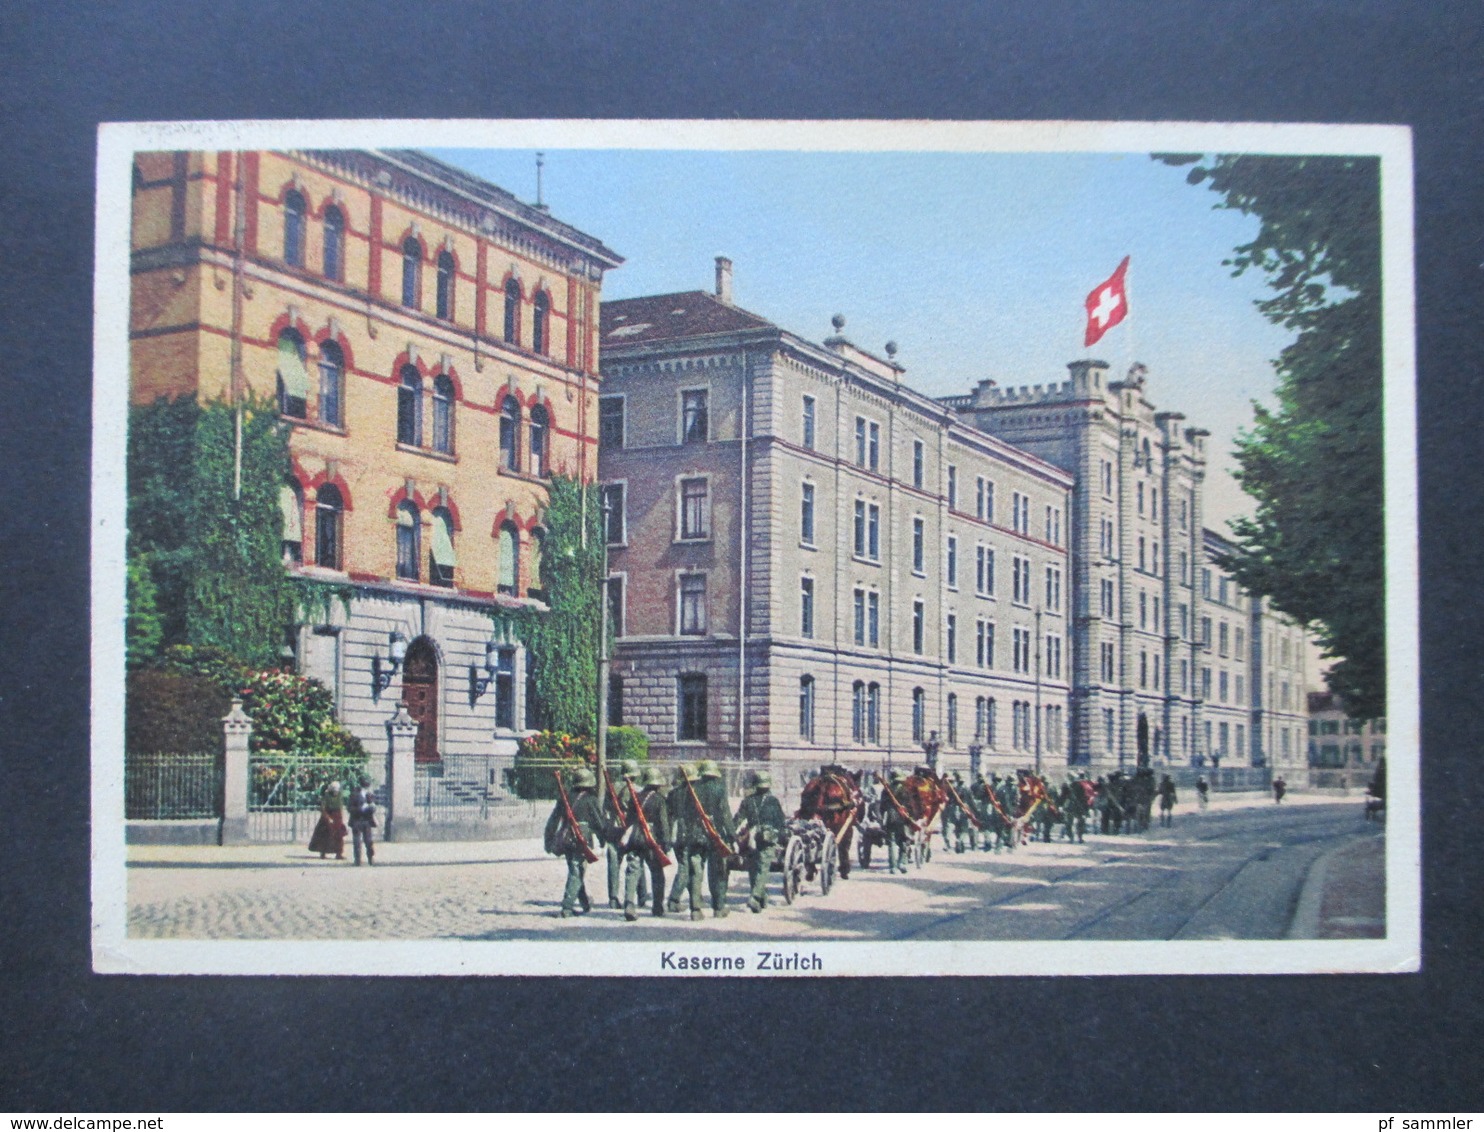 Schweiz 1940er Jahre Feldpost 2. WK Militärsache AK Kaserne Zürich Stempel Zürich Kaserne Militärpost - Covers & Documents